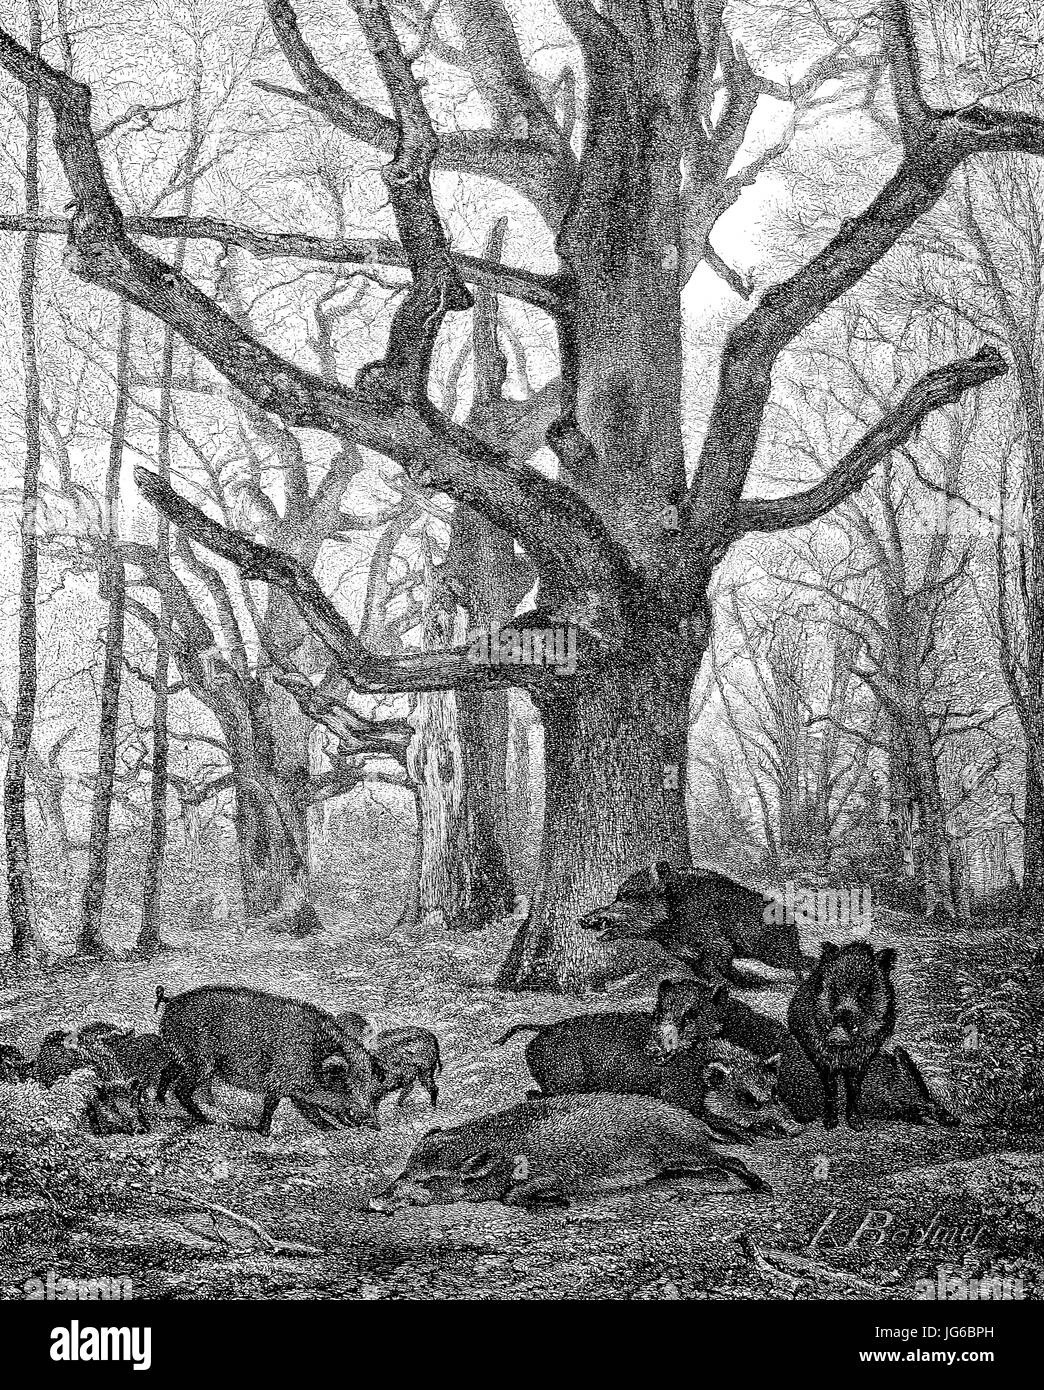 Digital verbessert:, Wildschwein, Sus Scrofa, auch die wilden Schweine oder eurasischen Wildschwein im Holz im Spätherbst, Abbildung aus dem 19. Jahrhundert Stockfoto